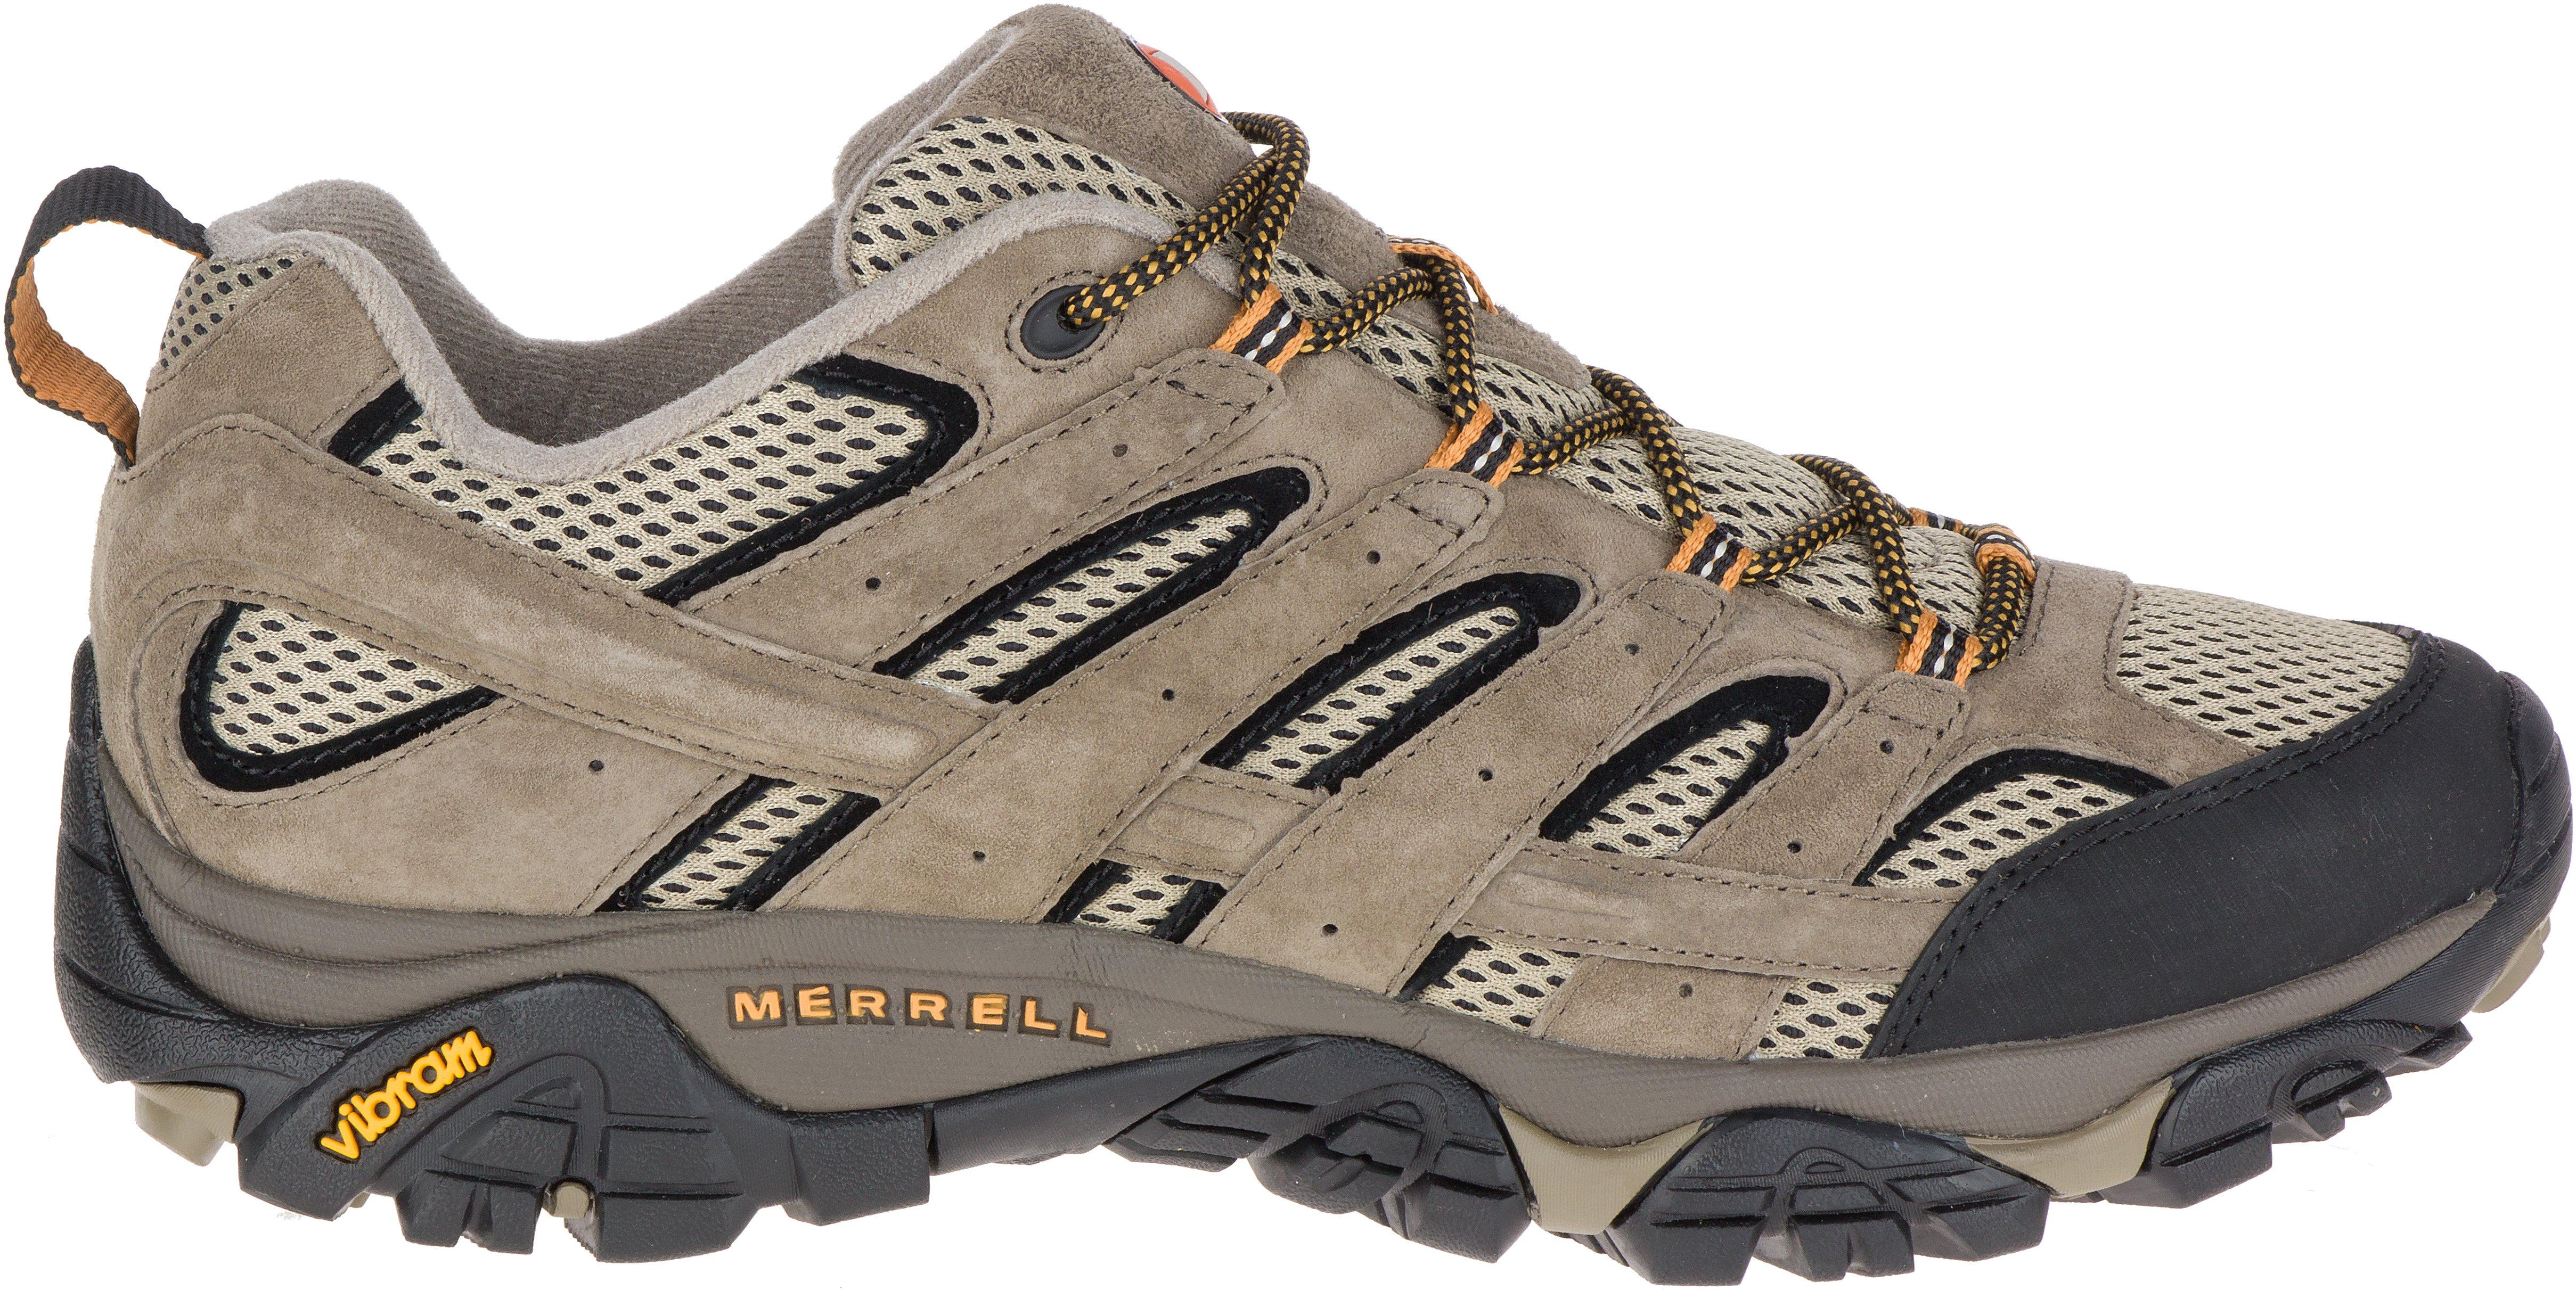 Men's Merrell Moab 2 Ventilator Walking Shoe Approach Shoe | Walking ...